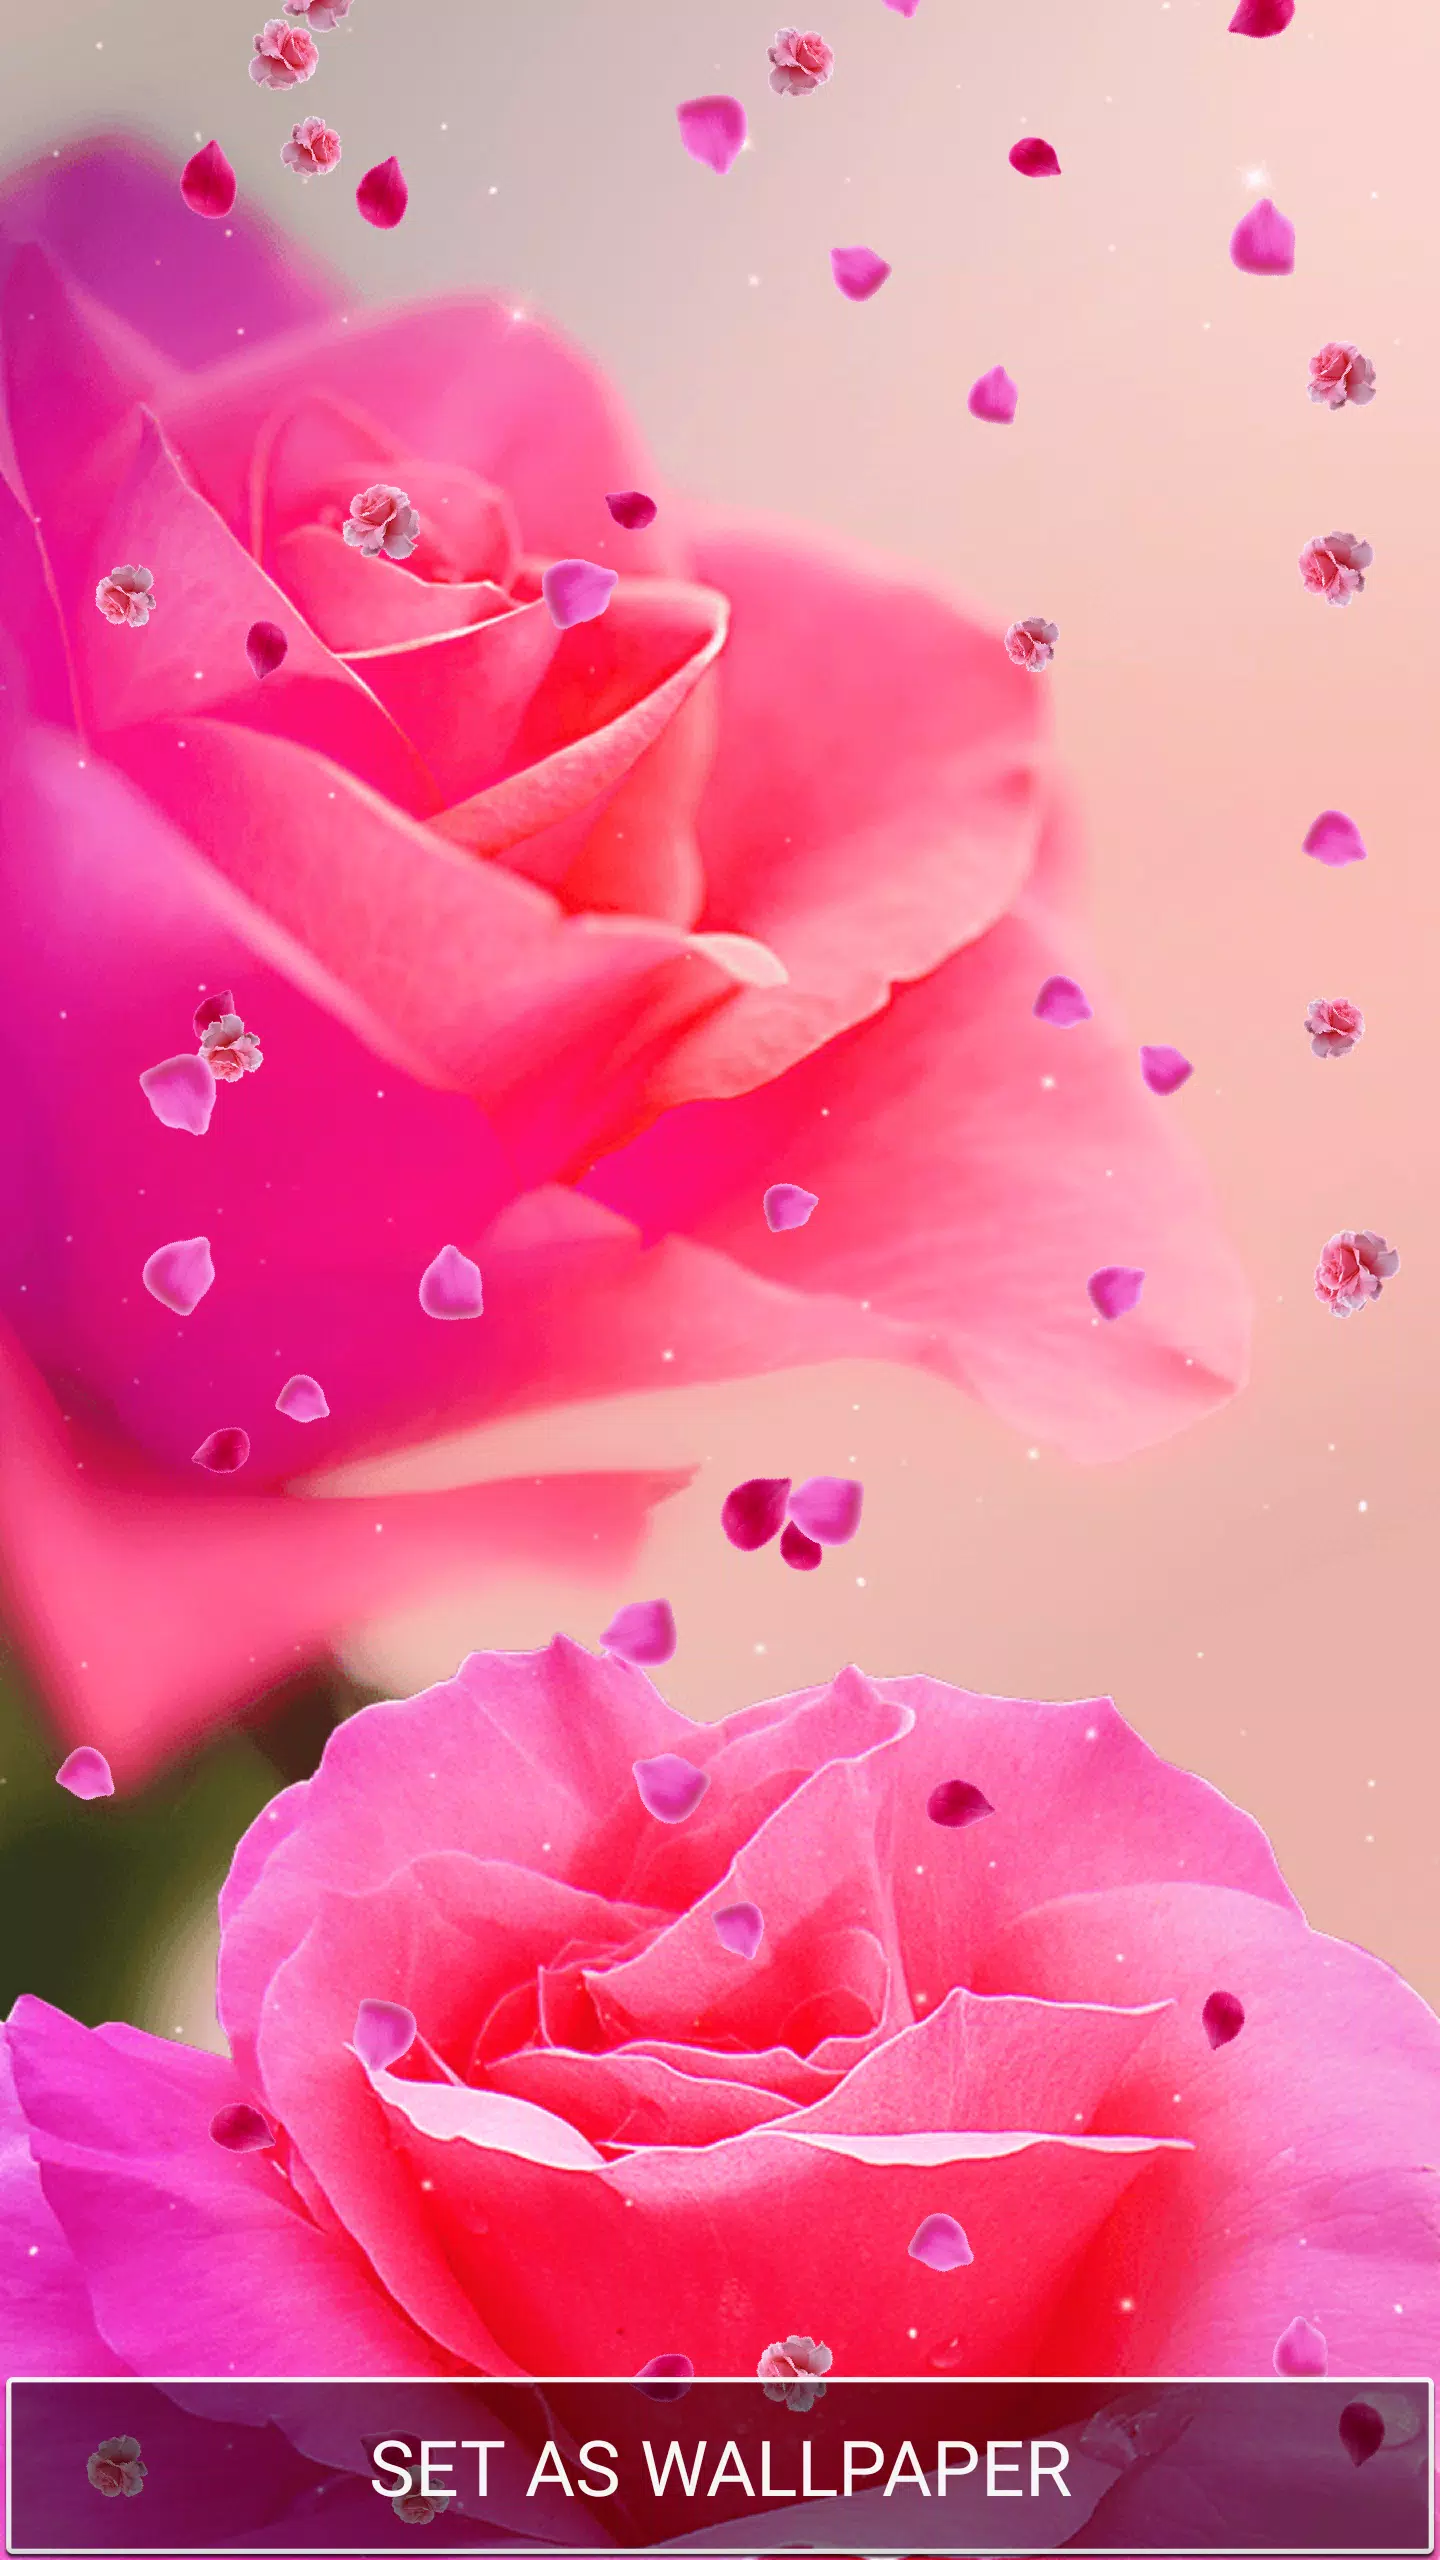 Android向けのピンクのバラ ライブ壁紙 Apkをダウンロードしましょう